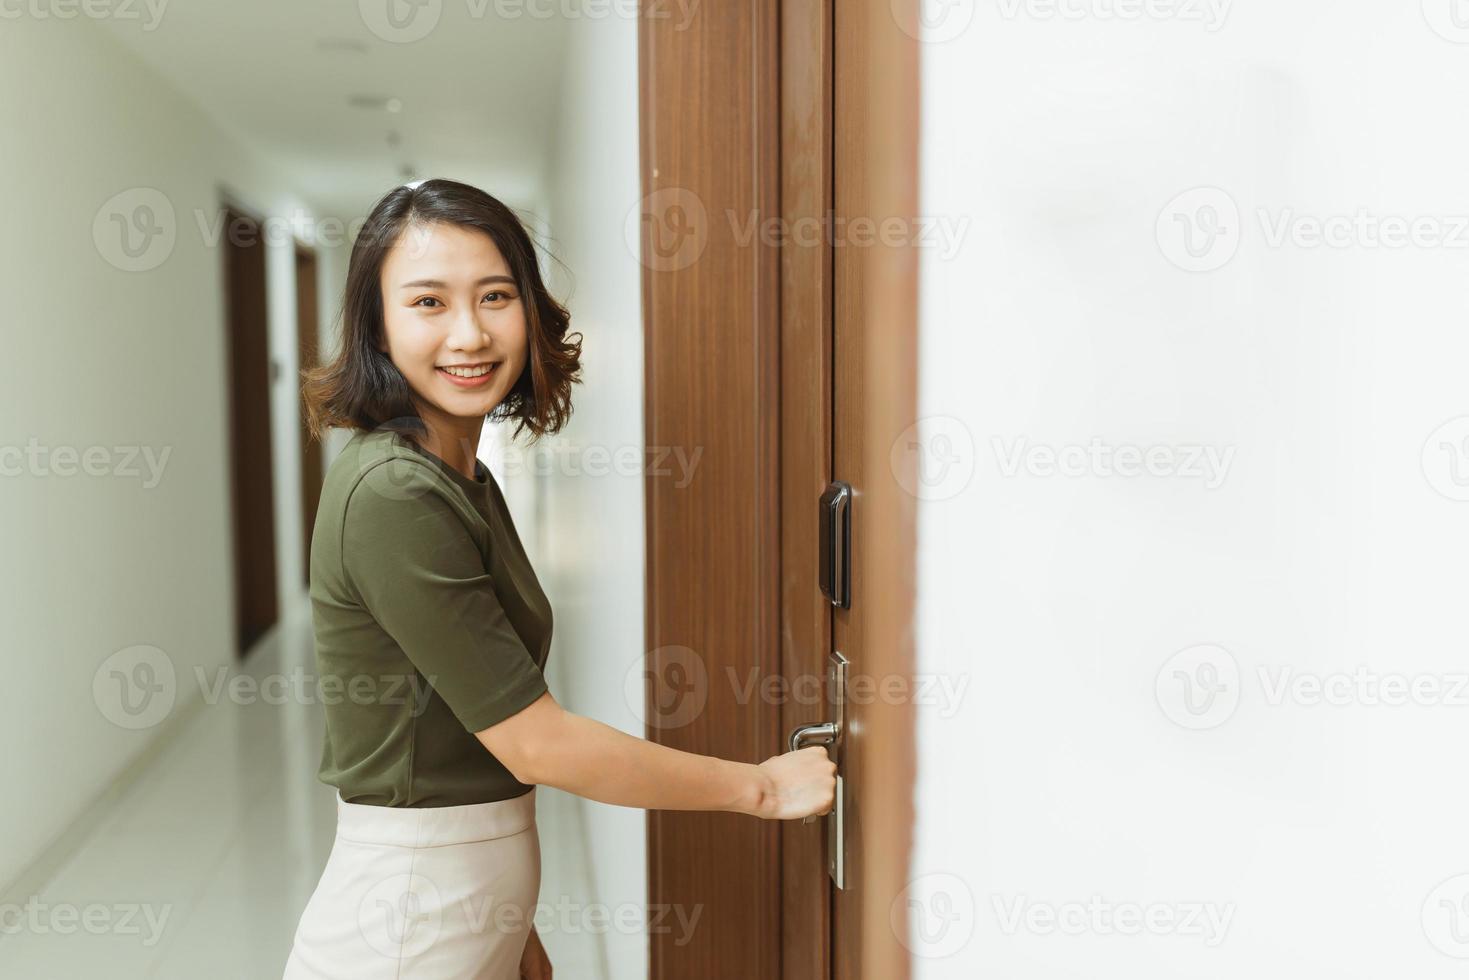 mano de mujer sosteniendo manijas de puerta modernas cerradura electrónica abre la puerta del apartamento foto